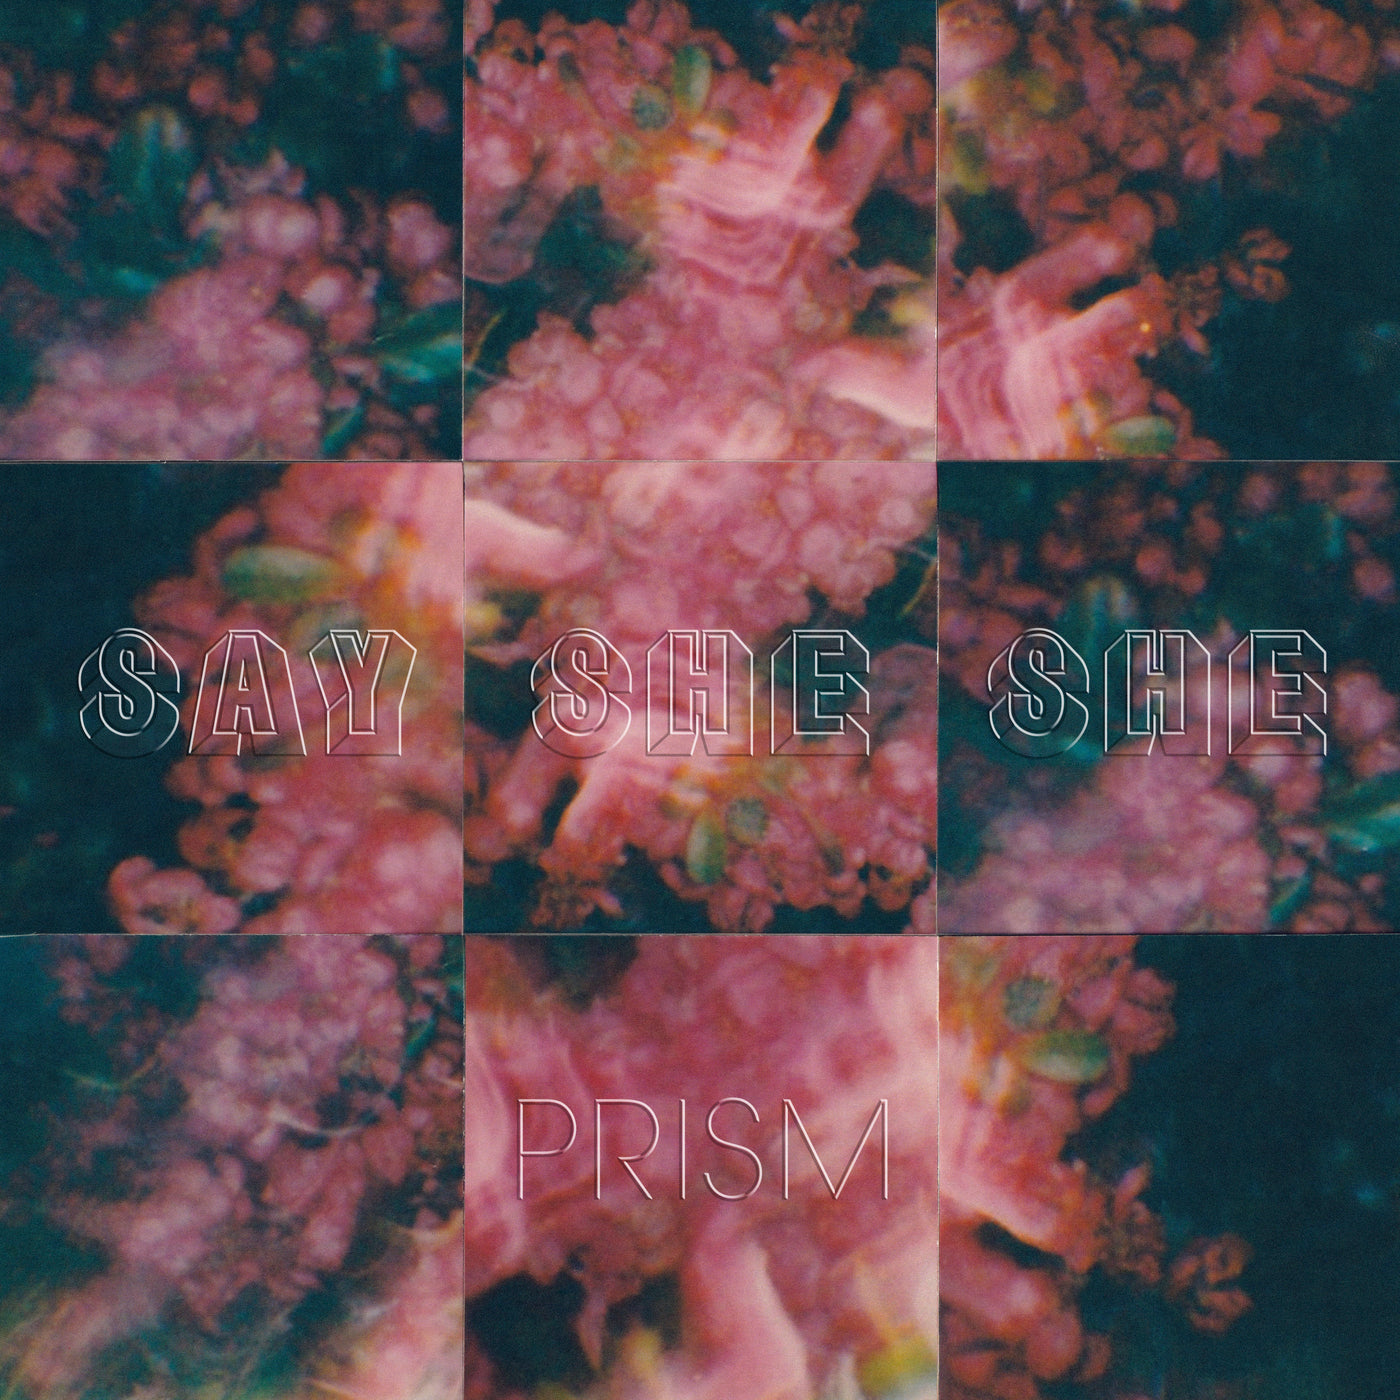 Say She She - "Prism" [Natural Vinyl w/ Black Swirl] Vinyl LP